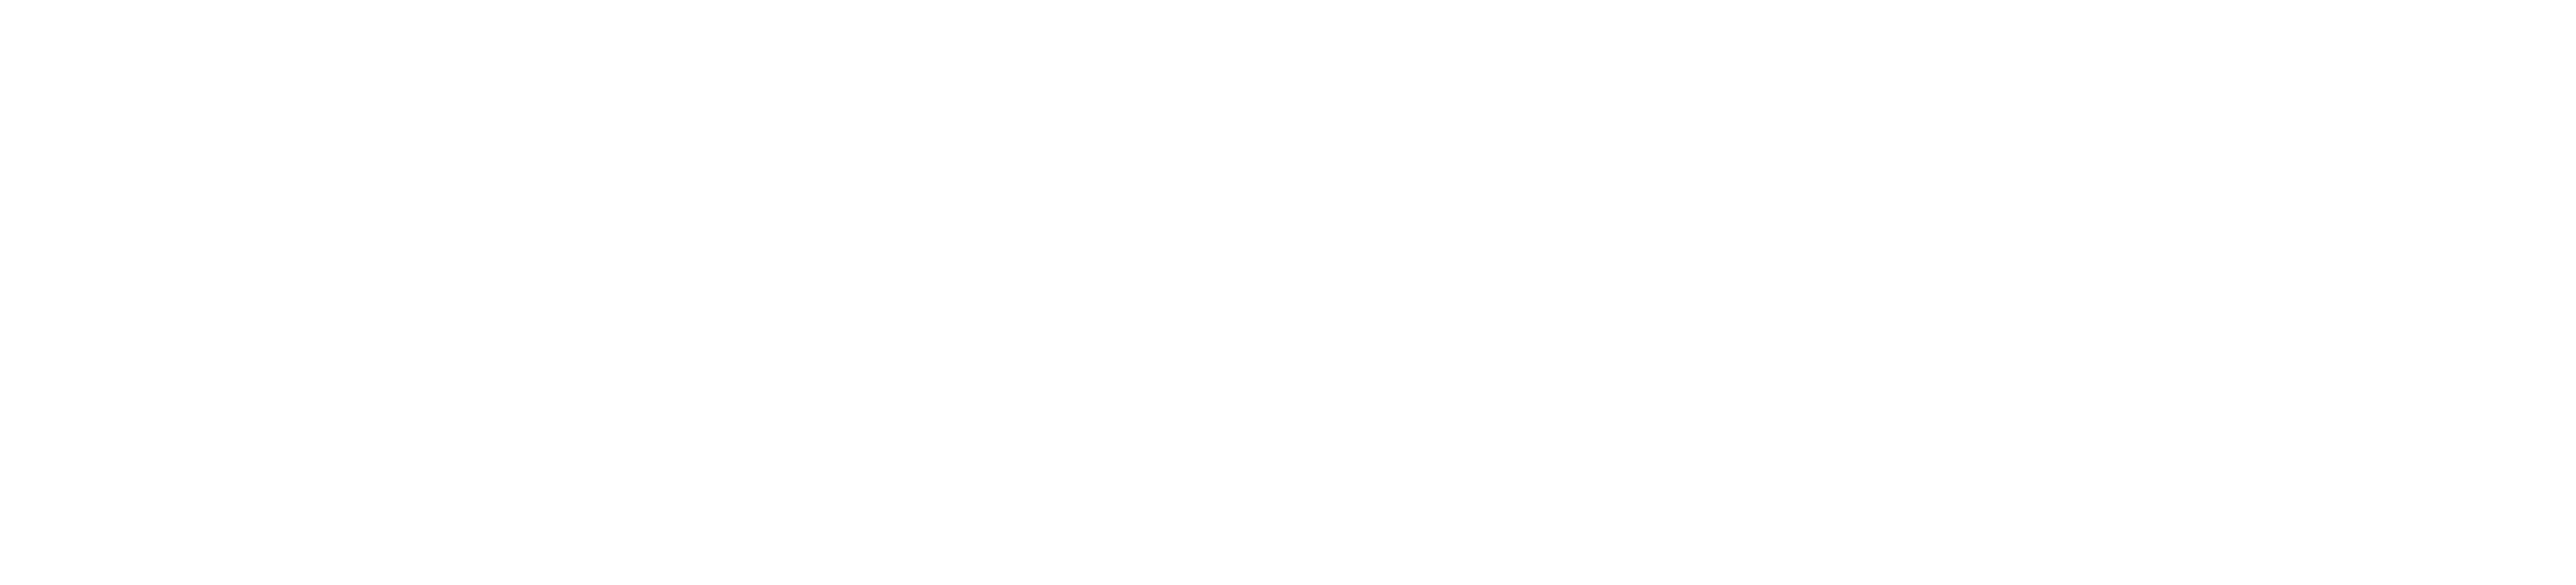 JCO Global Oncology Logo